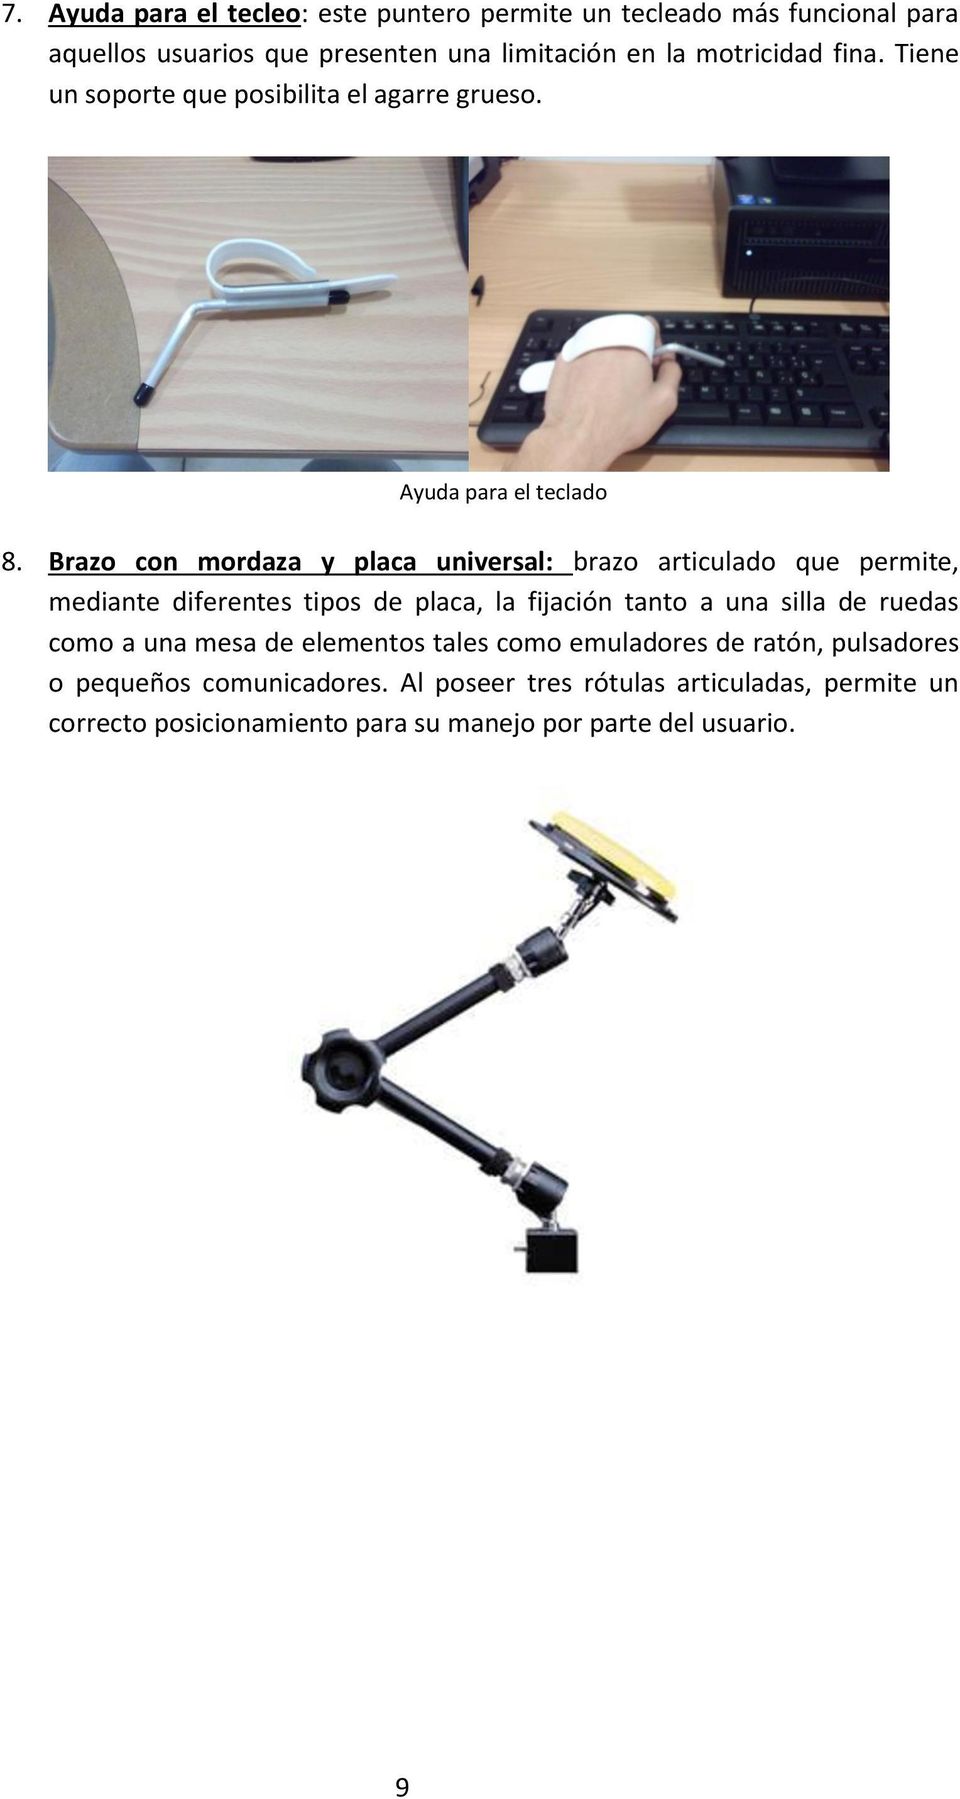 Brazo con mordaza y placa universal: brazo articulado que permite, mediante diferentes tipos de placa, la fijación tanto a una silla de ruedas